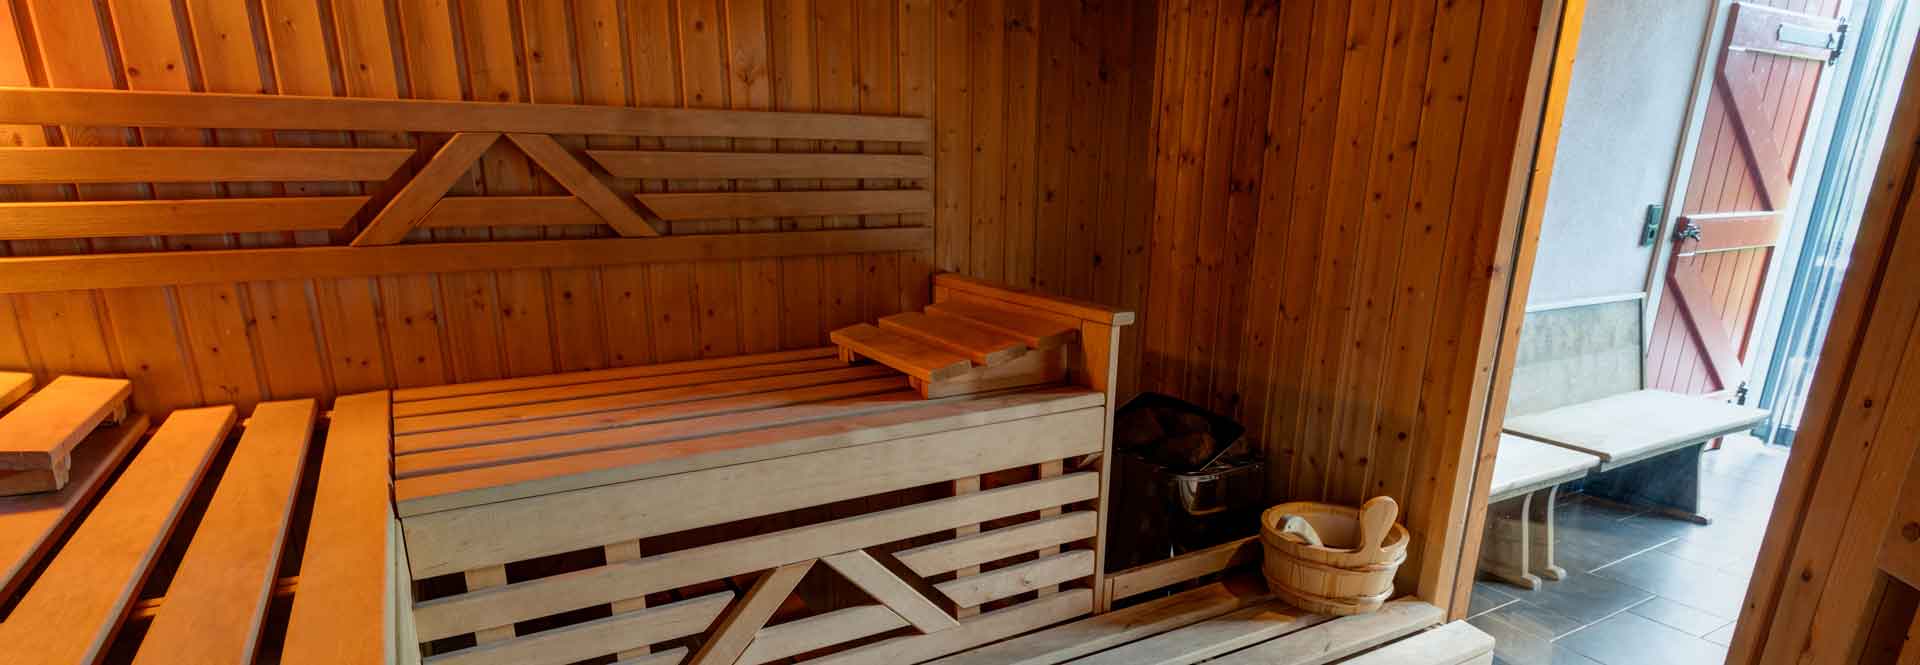 de ultieme wellness-belevening met sauna, jacuzzi en relax-ruimte